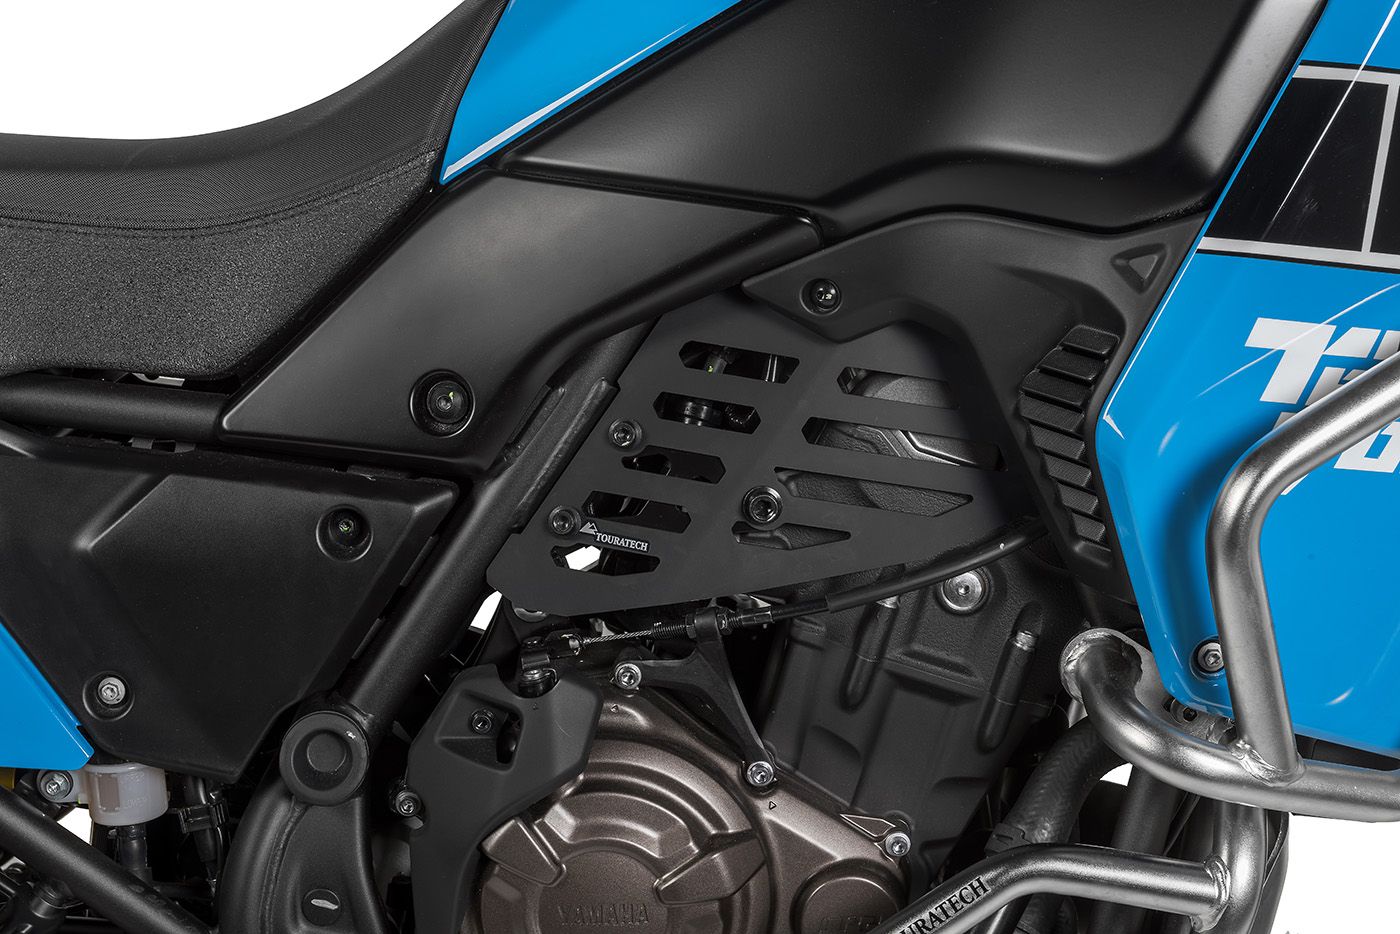 ZALAGA Motorrad Hinten ABS Sensor Schutz Passend für Tenere 700 2019-2021 Motorrad Hinten ABS Sensor Abdeckung Schutz Schwarz 